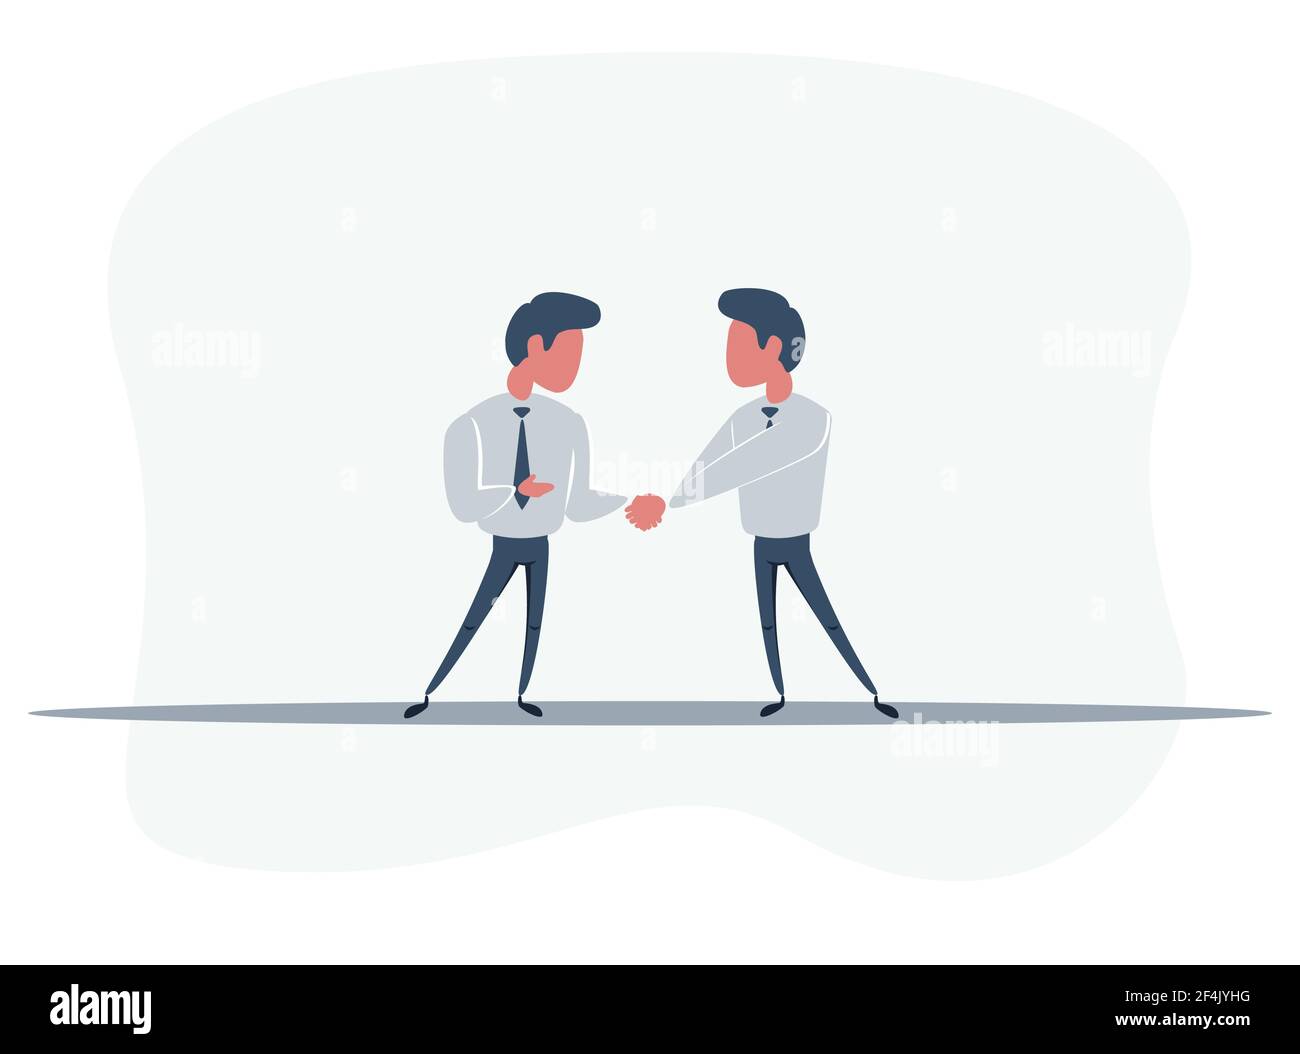 Schüttelnde Hände Business-Illustration, Symbol des Erfolgs Deal, glückliche Partnerschaft, Gruß schütteln, casual handshaking Vereinbarung flat sign Design Stock Vektor